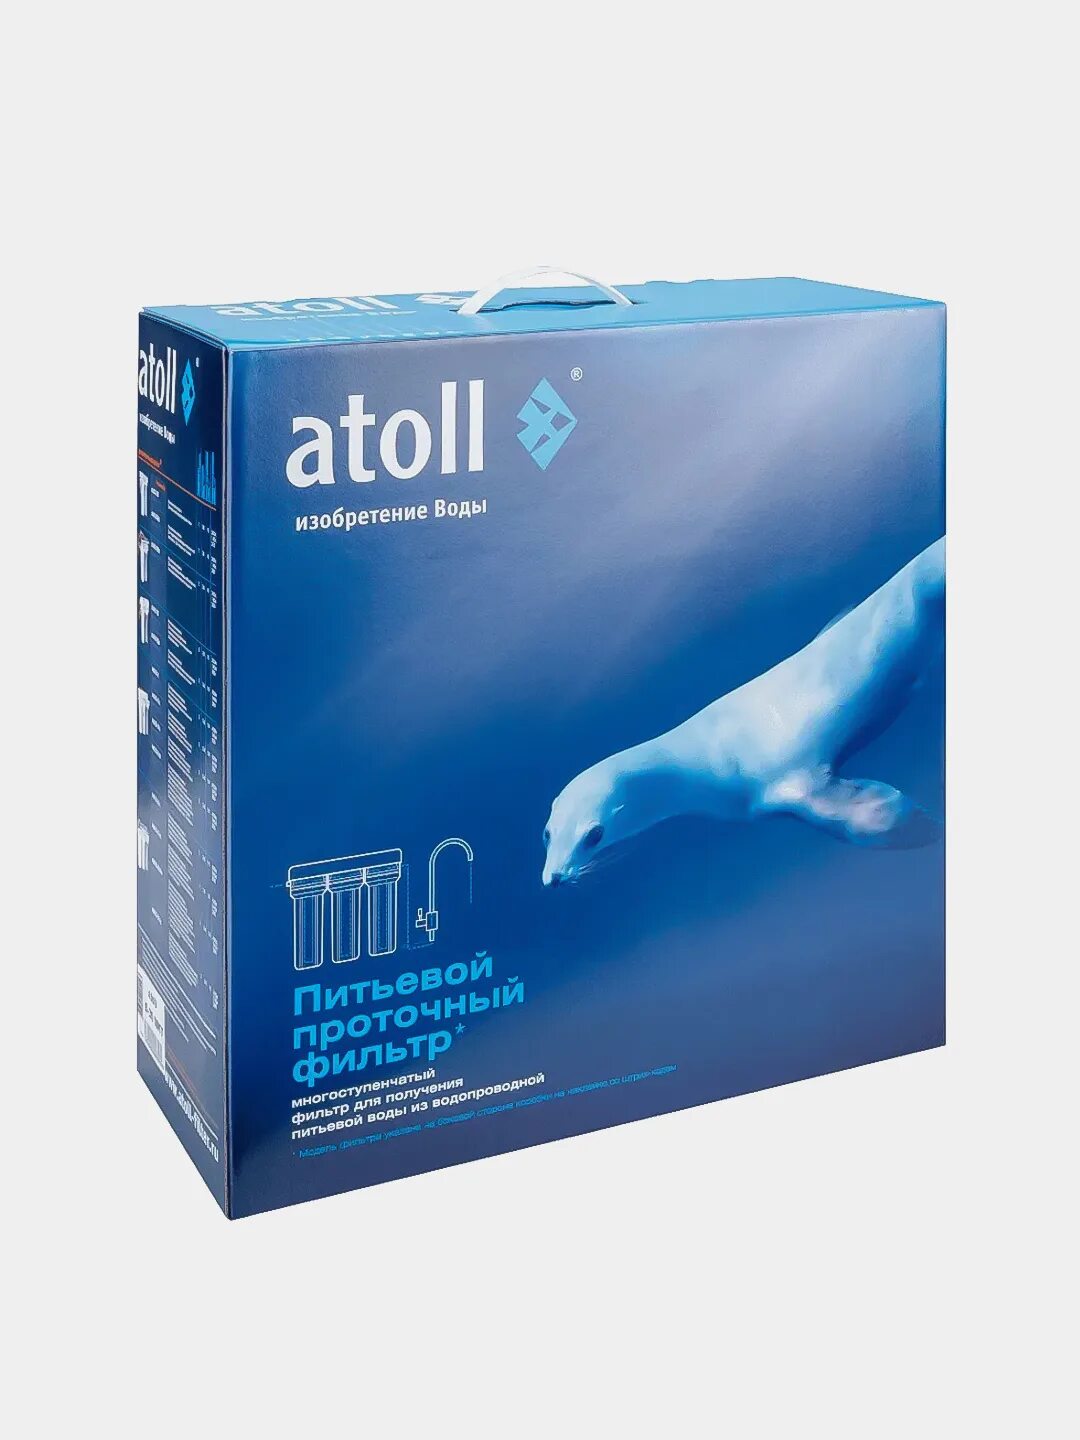 Atoll d-30s MKT. Atoll d-30. Проточный питьевой фильтр Atoll d-30 MKT. Проточный питьевой фильтр Atoll d-30 MKT В коробке. Питьевой atoll